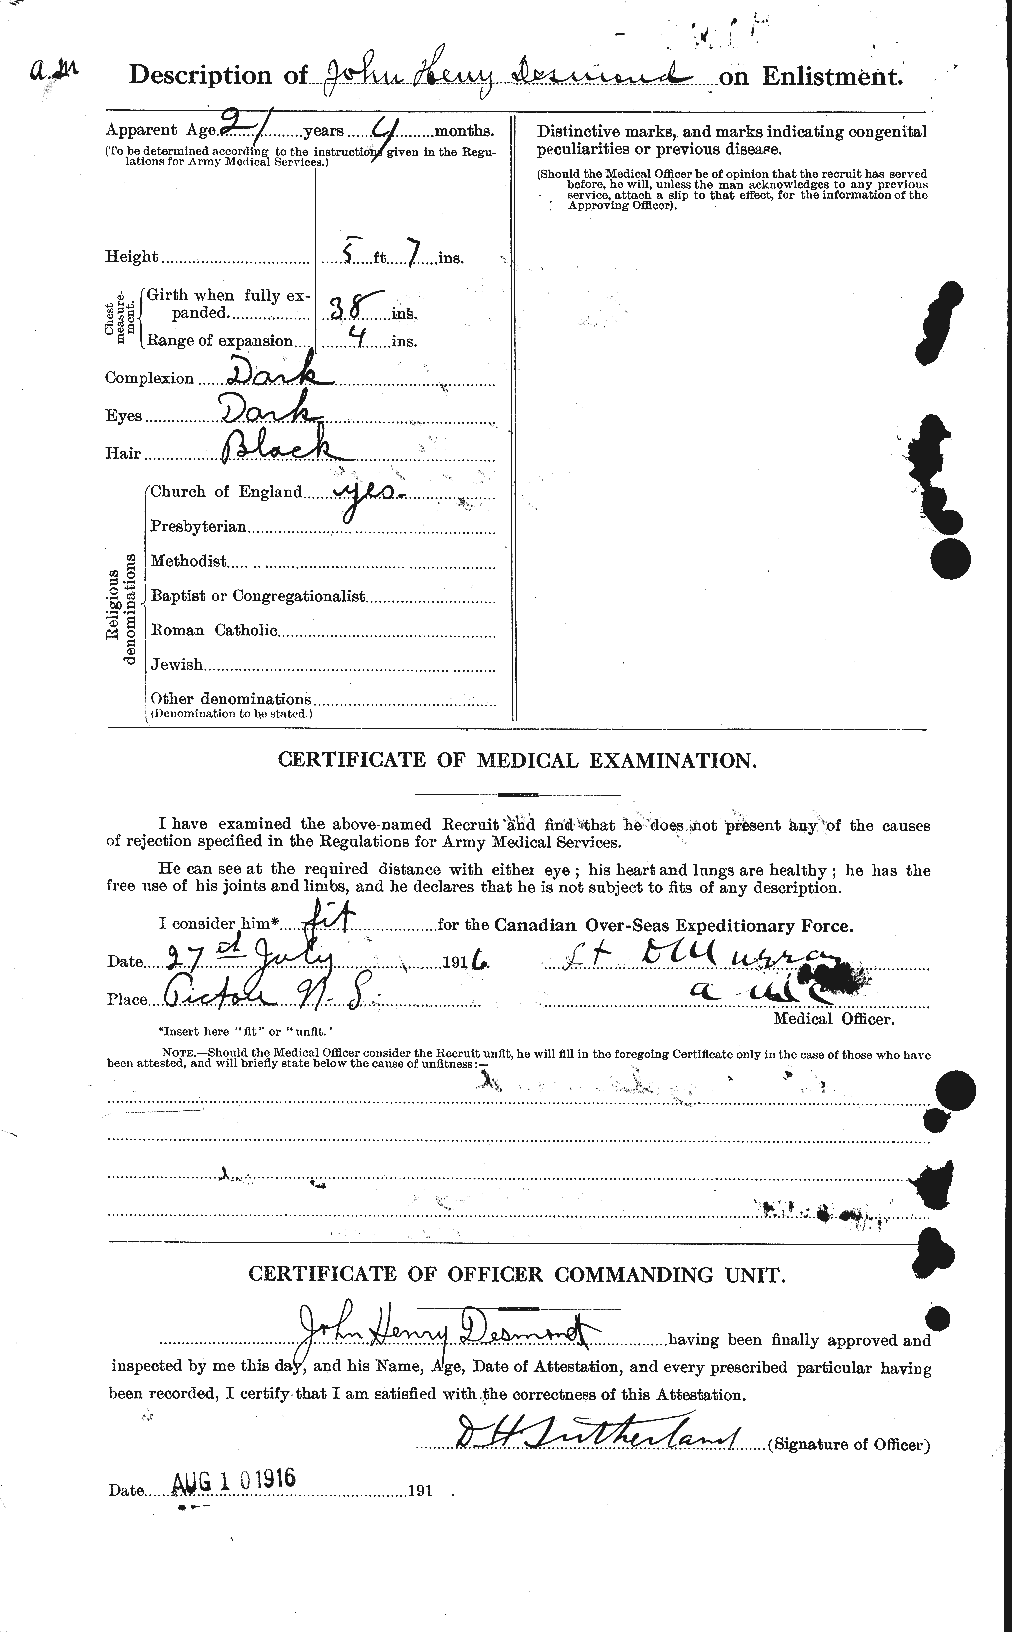 Dossiers du Personnel de la Première Guerre mondiale - CEC 291353b